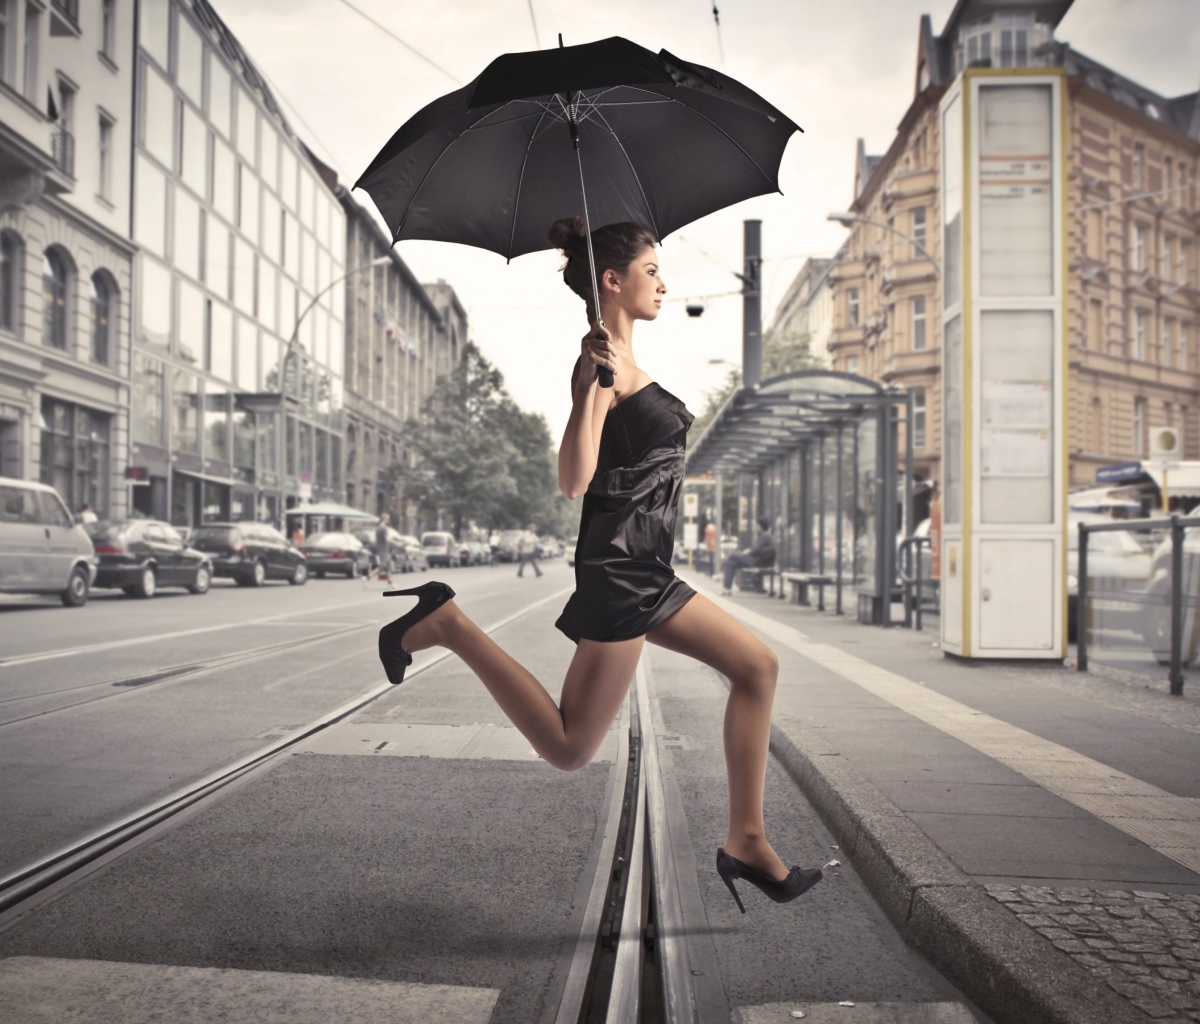 Обои City Girl With Black Umbrella 1200x1024